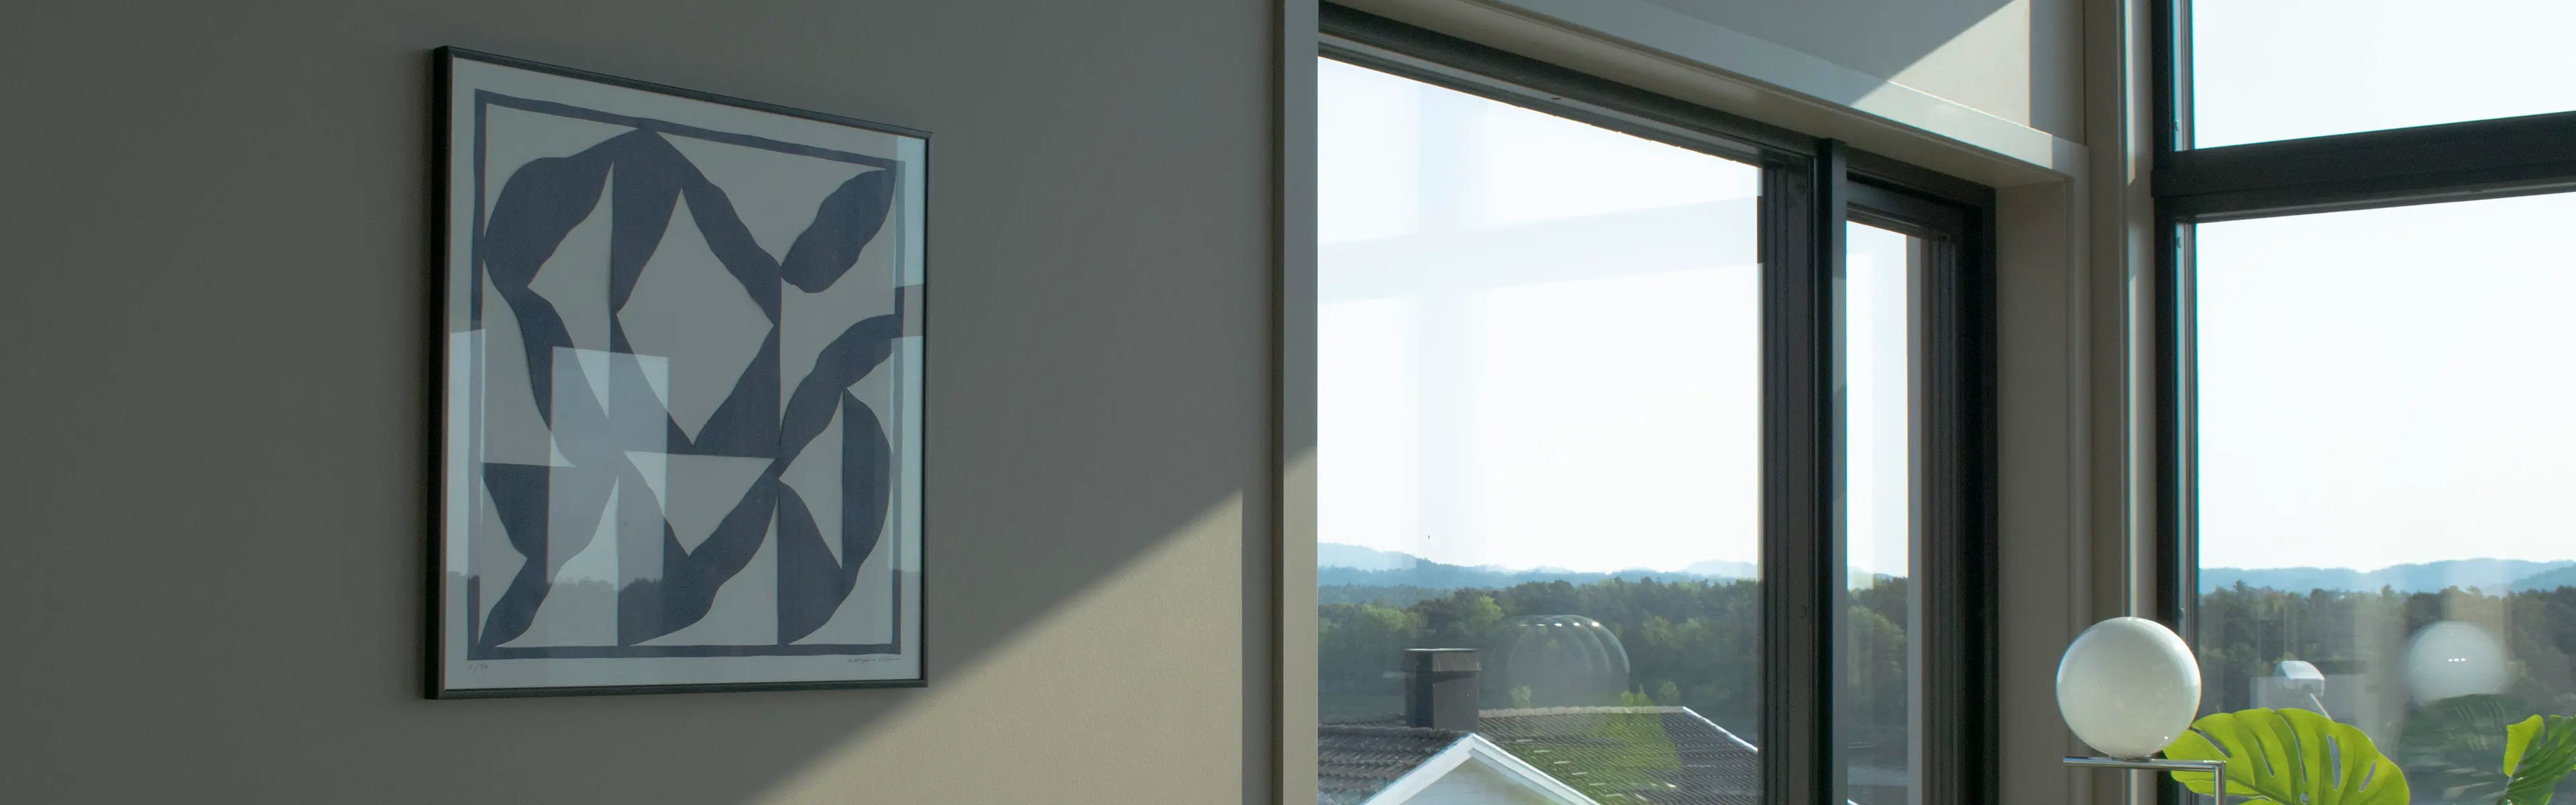 Gråbeige stue i moderne hus med glatte lister rundt vinduene.